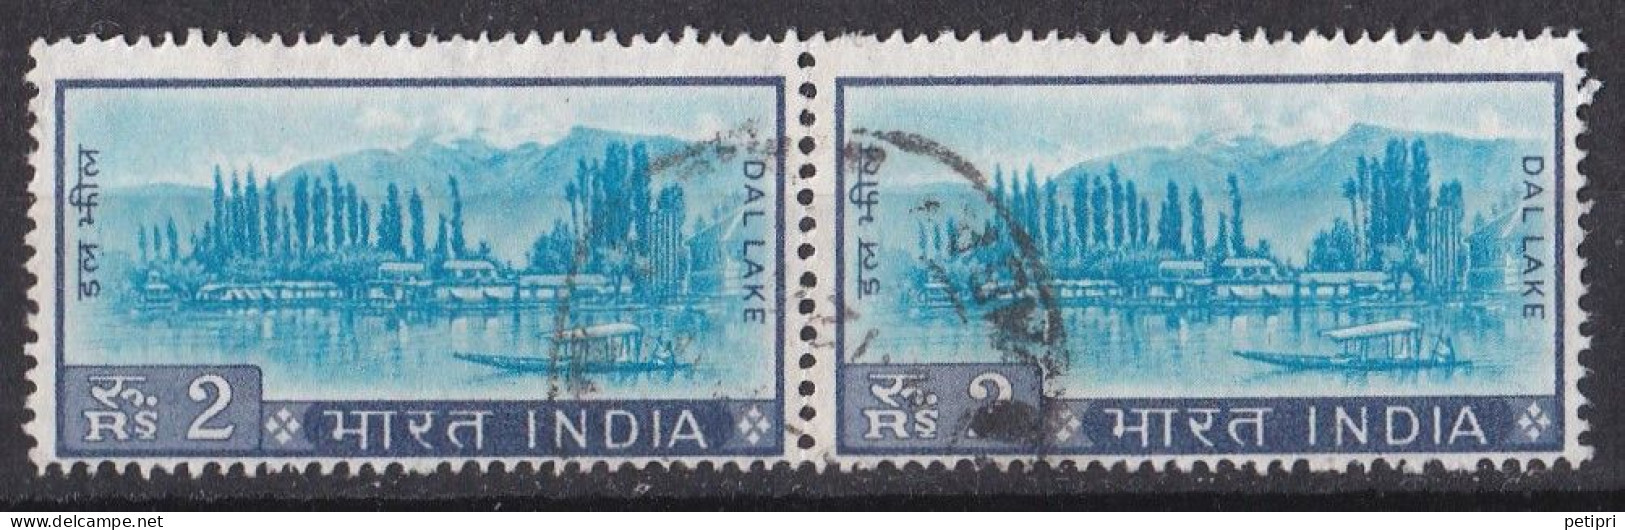 Inde  - 1960  1969 -   Y&T  N °  231  Paire Oblitérée - Gebraucht